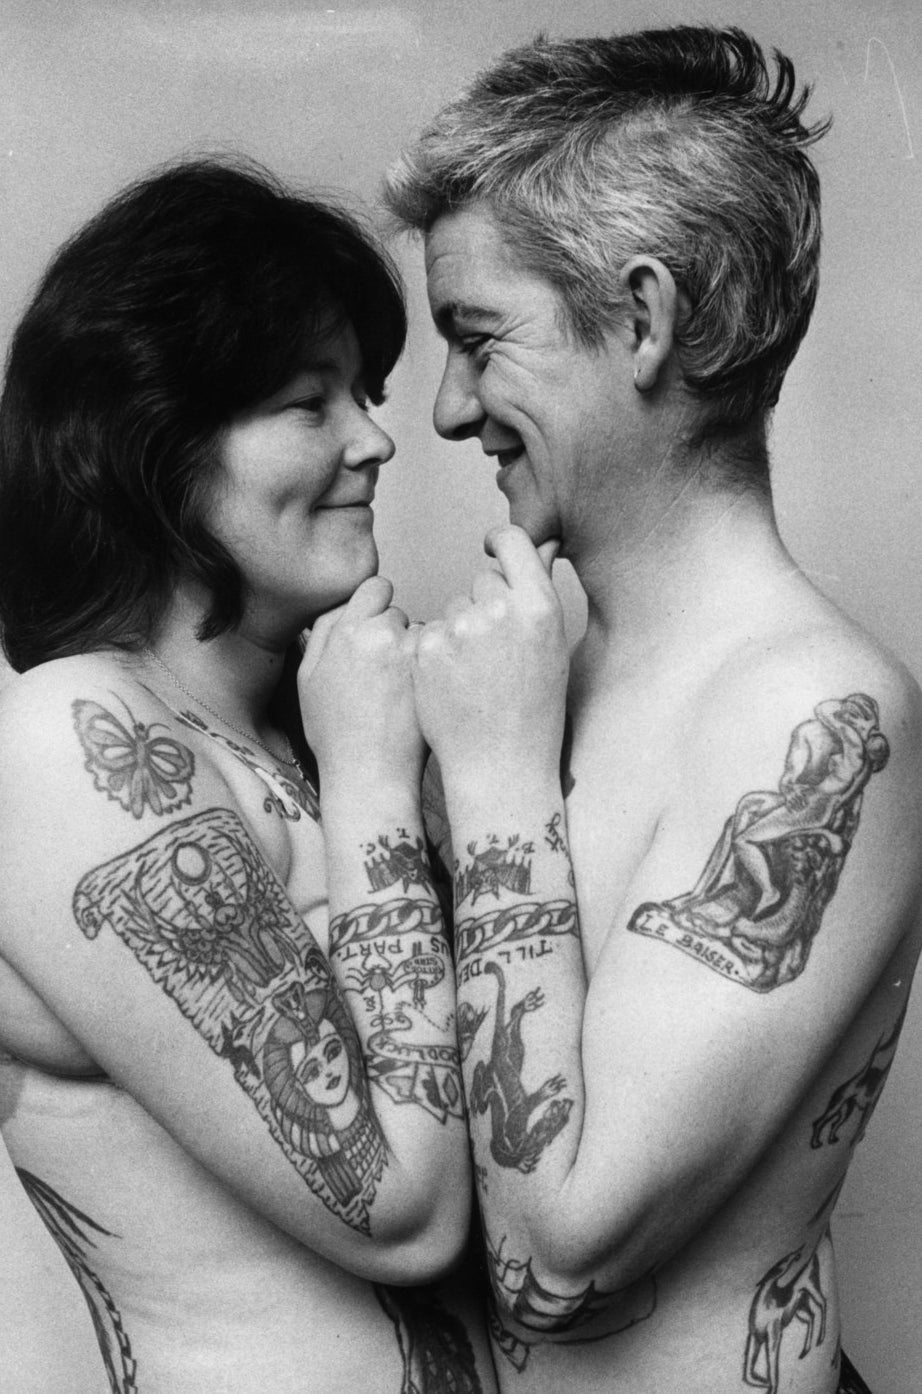 Ivor et Marianne Collier affichant leur adoration mutuelle et leur passion pour les tatouages. 1972.